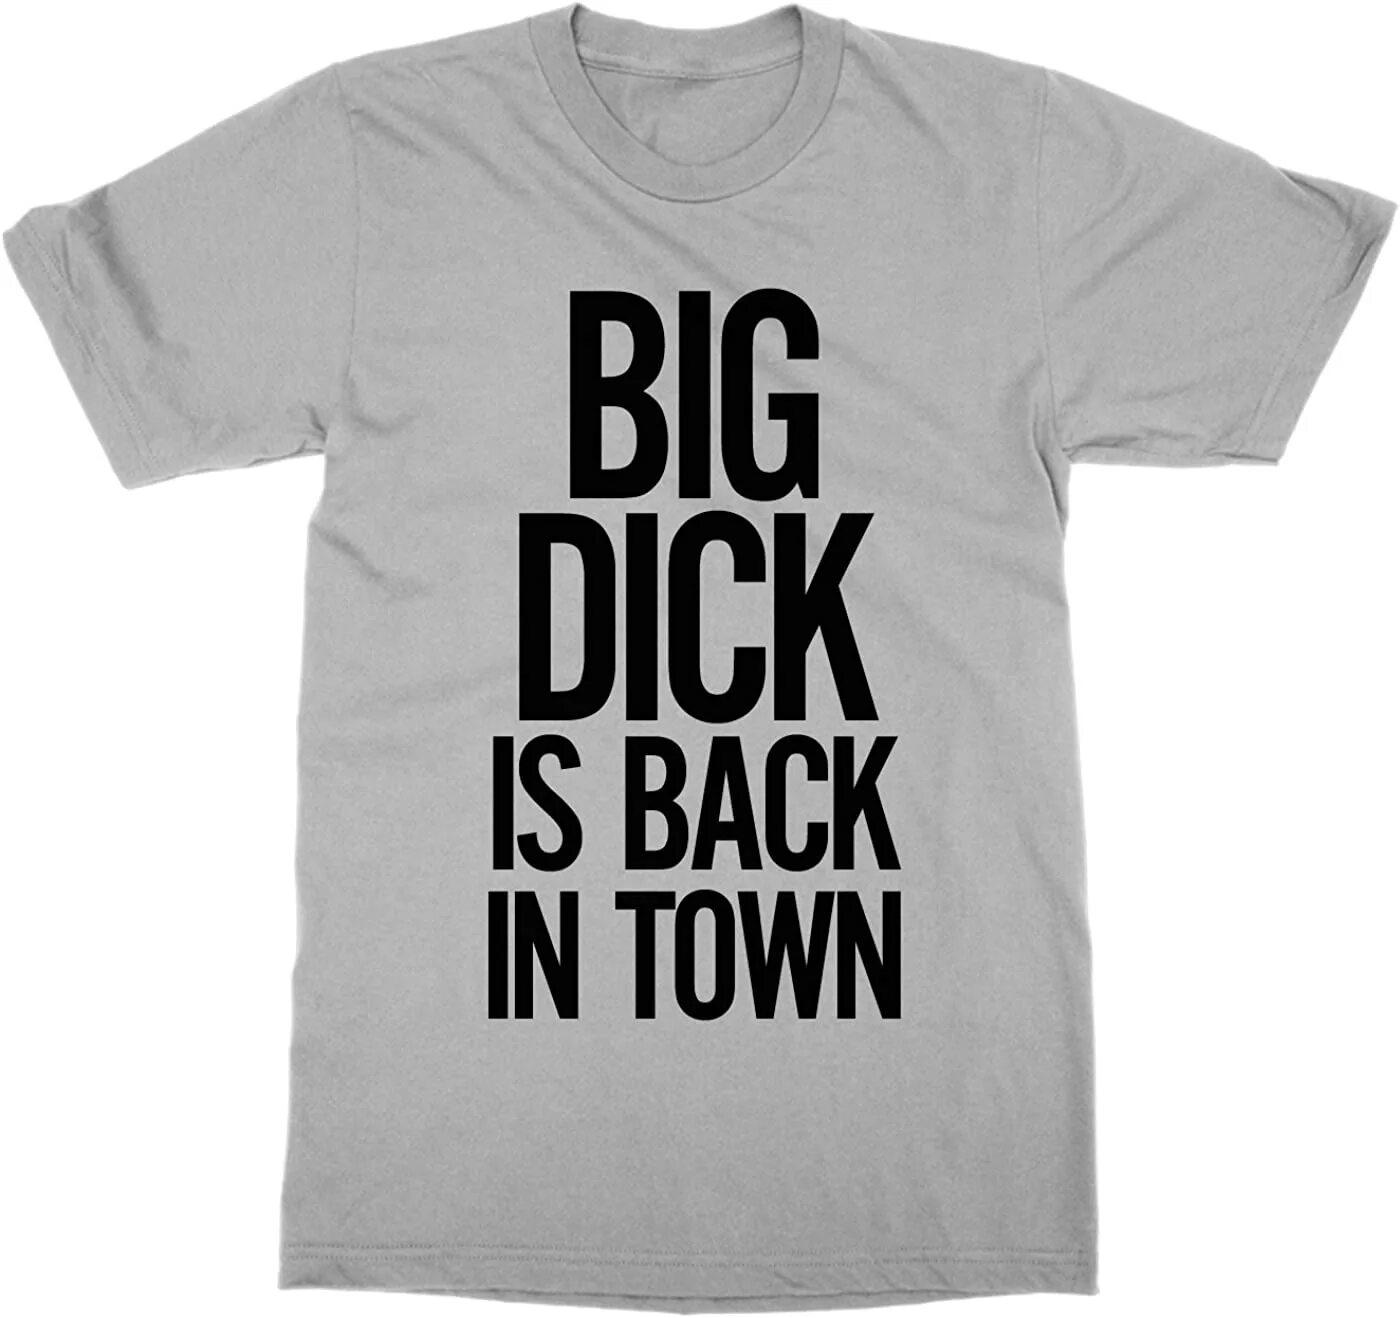 Dick is back. Футболка с членом. Смешная футболка с членом. Футболка big dick is back in Town. Майка с членом.